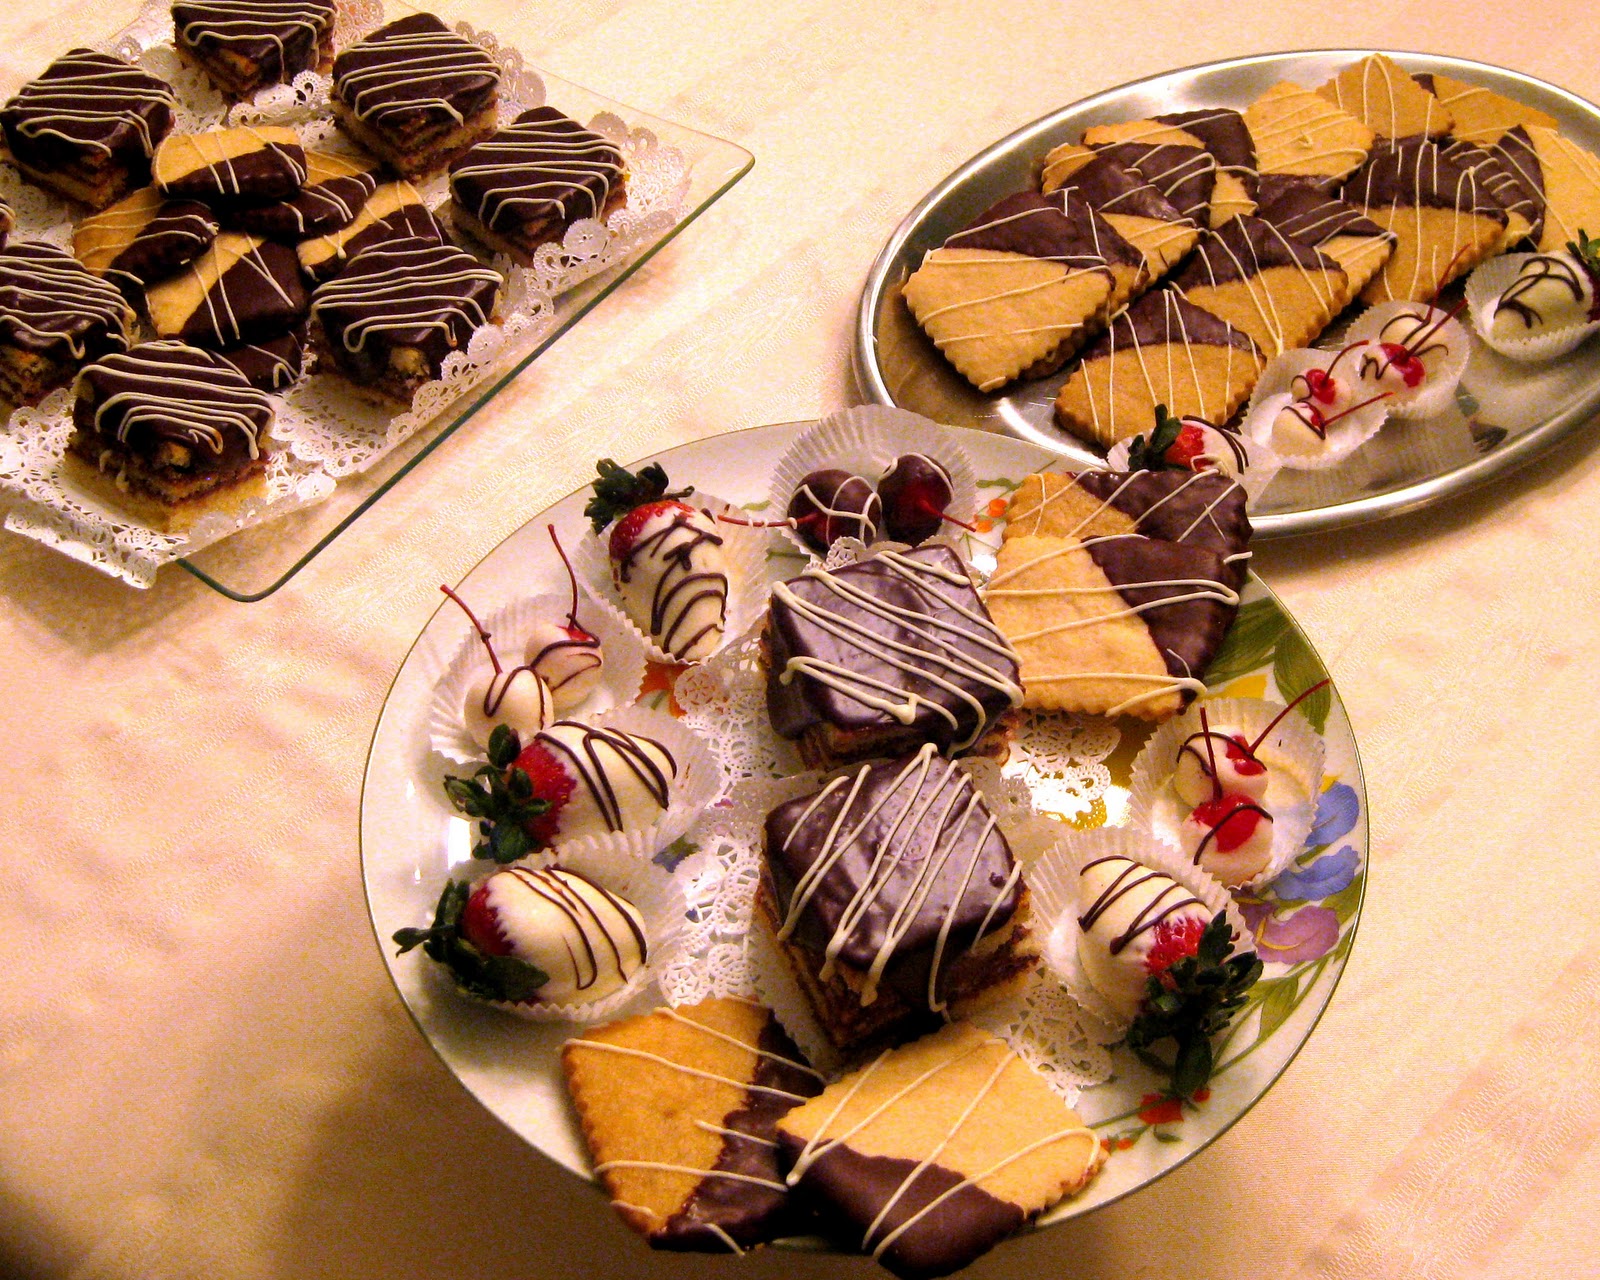 http://1.bp.blogspot.com/-Yz_hQtsKKPk/TtBPmVHKpsI/AAAAAAAACMU/QMtmYWuqNwk/s1600/chocolate+desserts.jpg